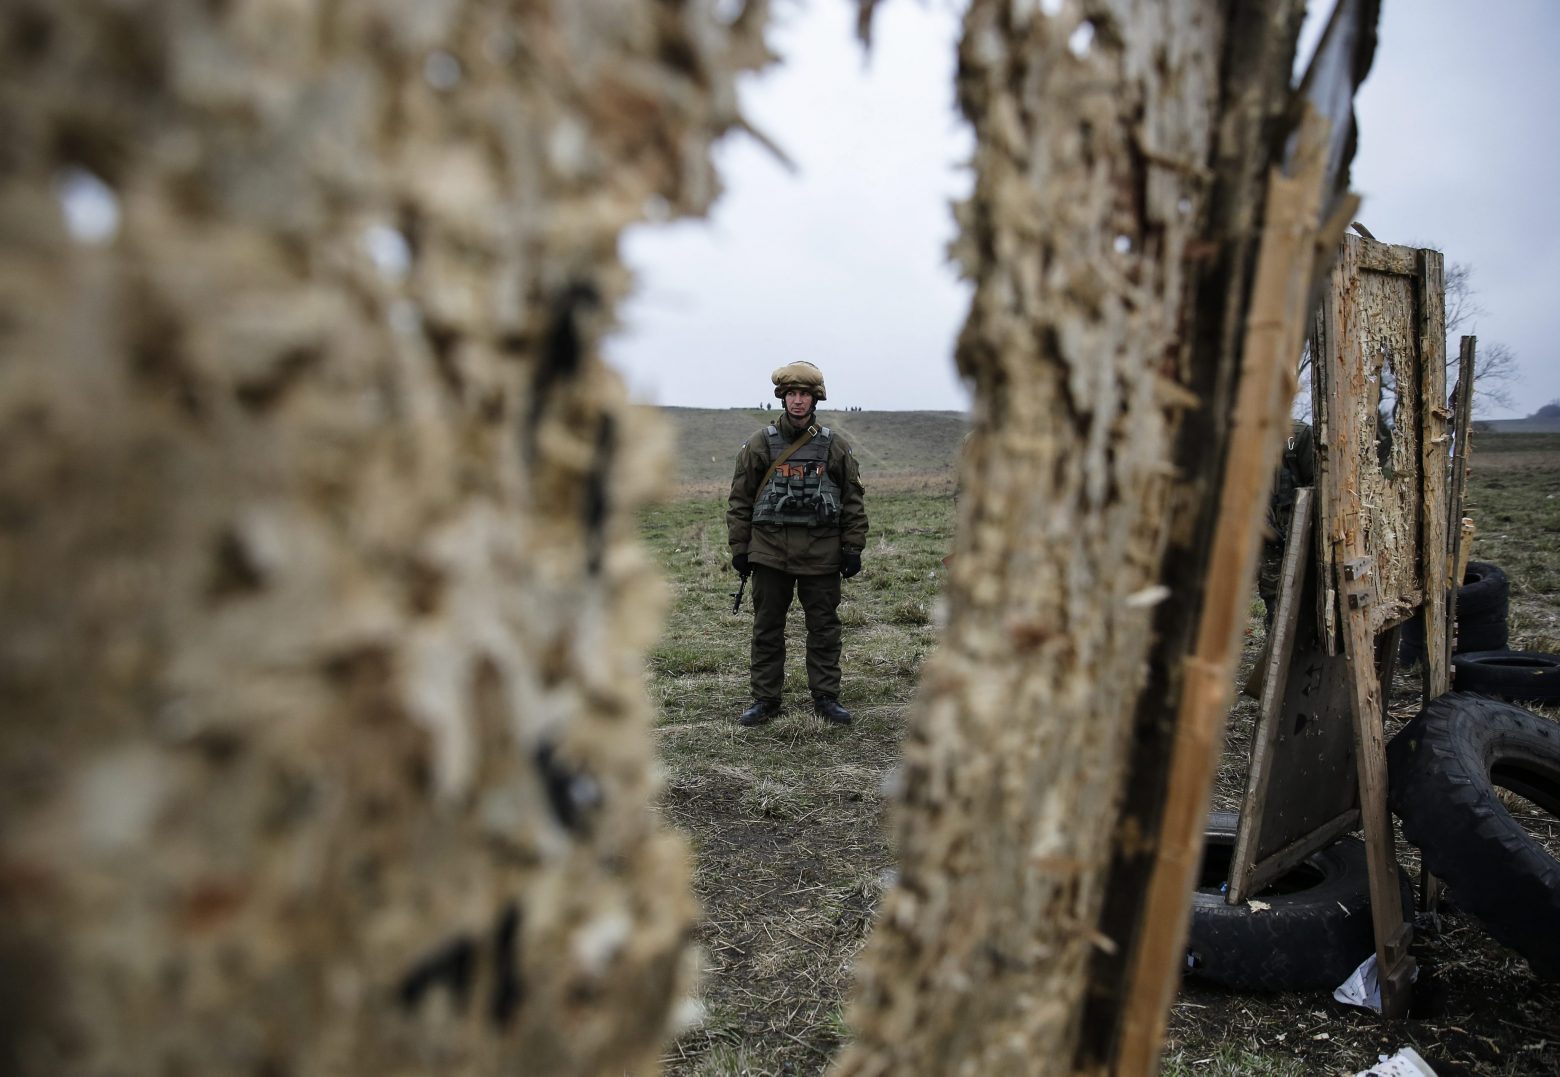 Ουκρανία: Η μάχη στο Ντονμπάς μπορεί να κρίνει την έκβαση του πολέμου - Ποιος, όμως, θα είναι ο νικητής;